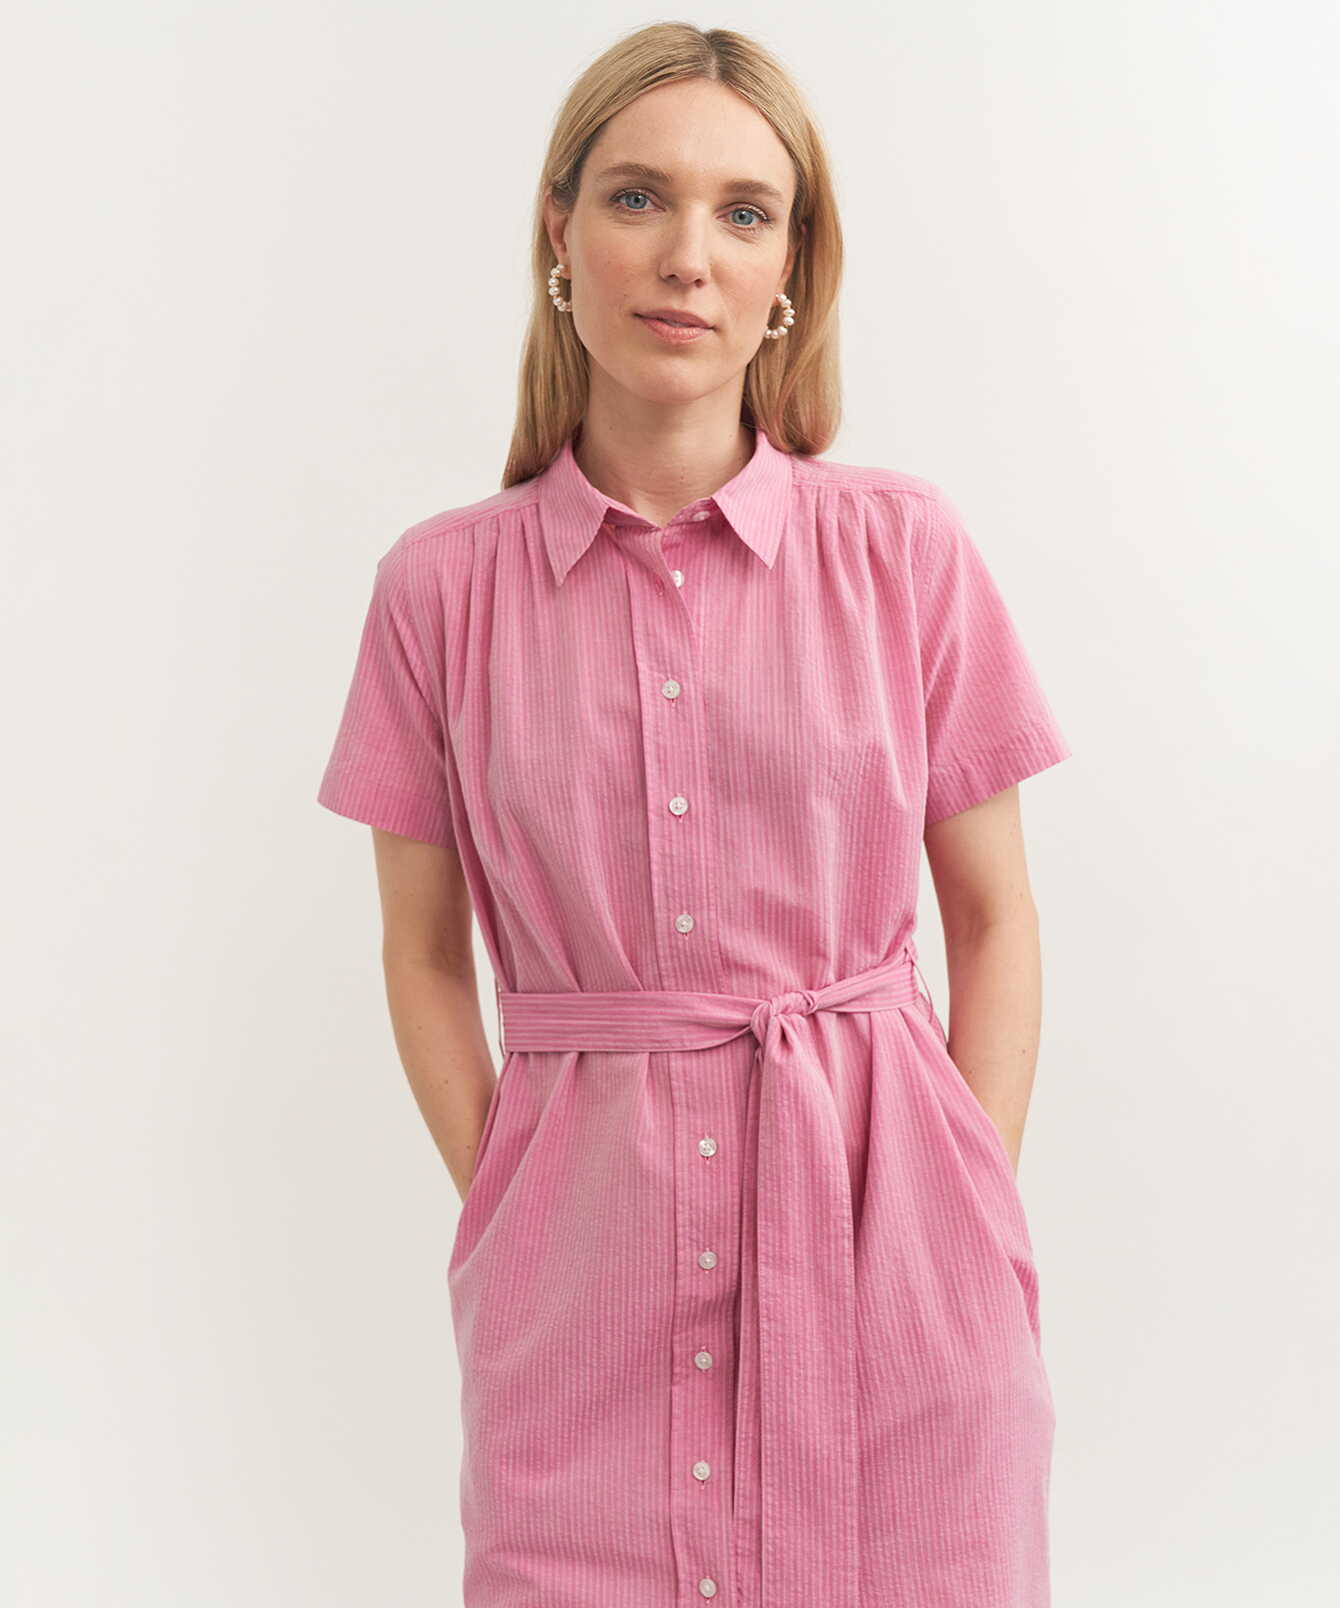 Shirt Brigitte Ponza Pink Dress The Shirt Factory